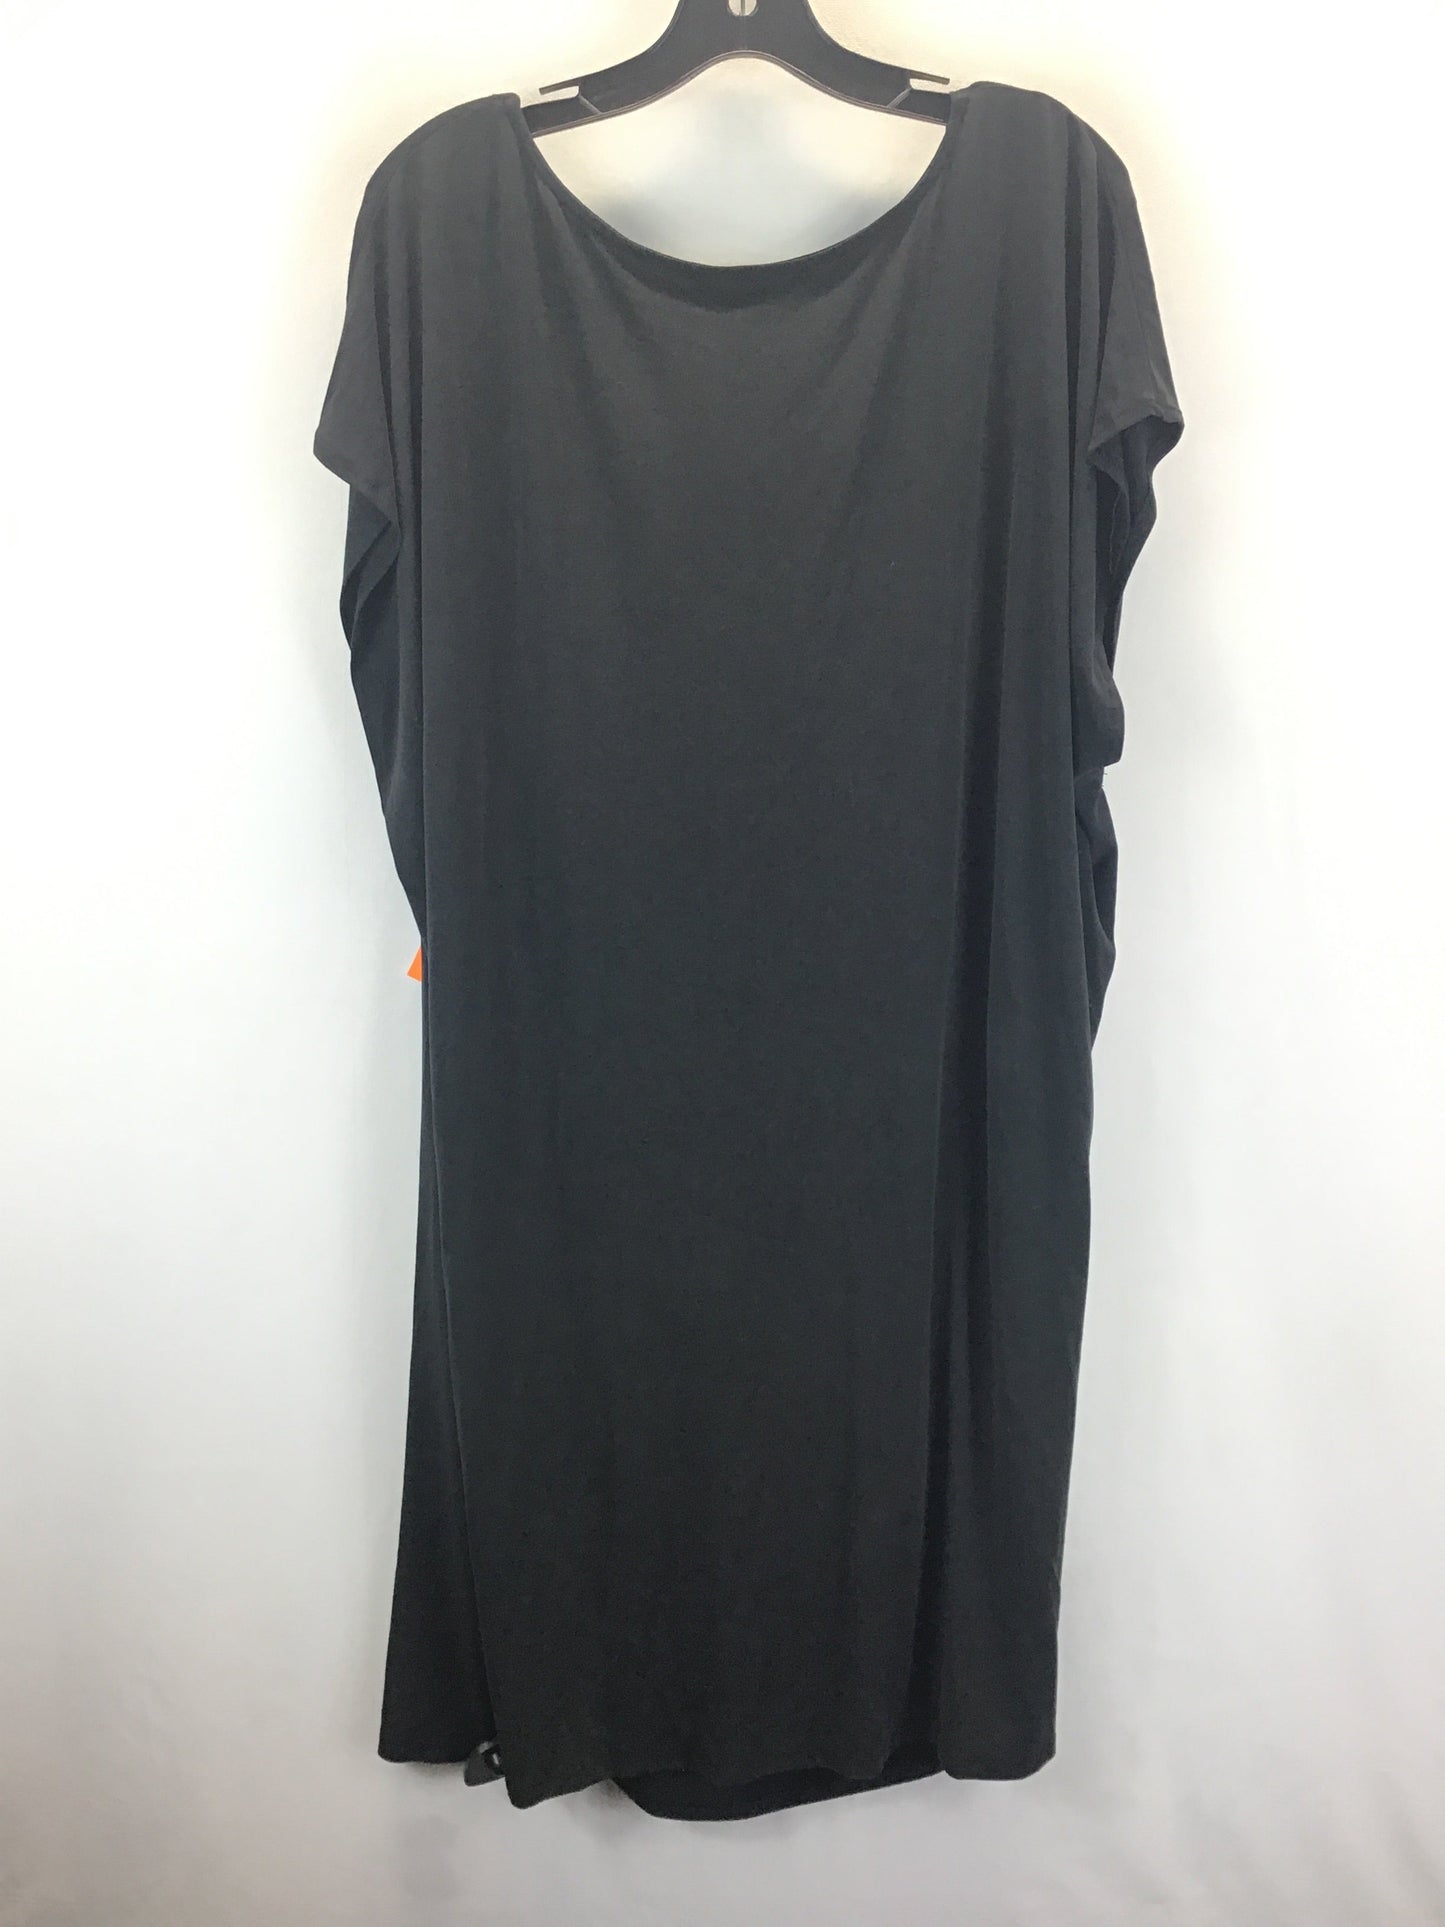 Black Dress Casual Midi Eloquii, Size 1x